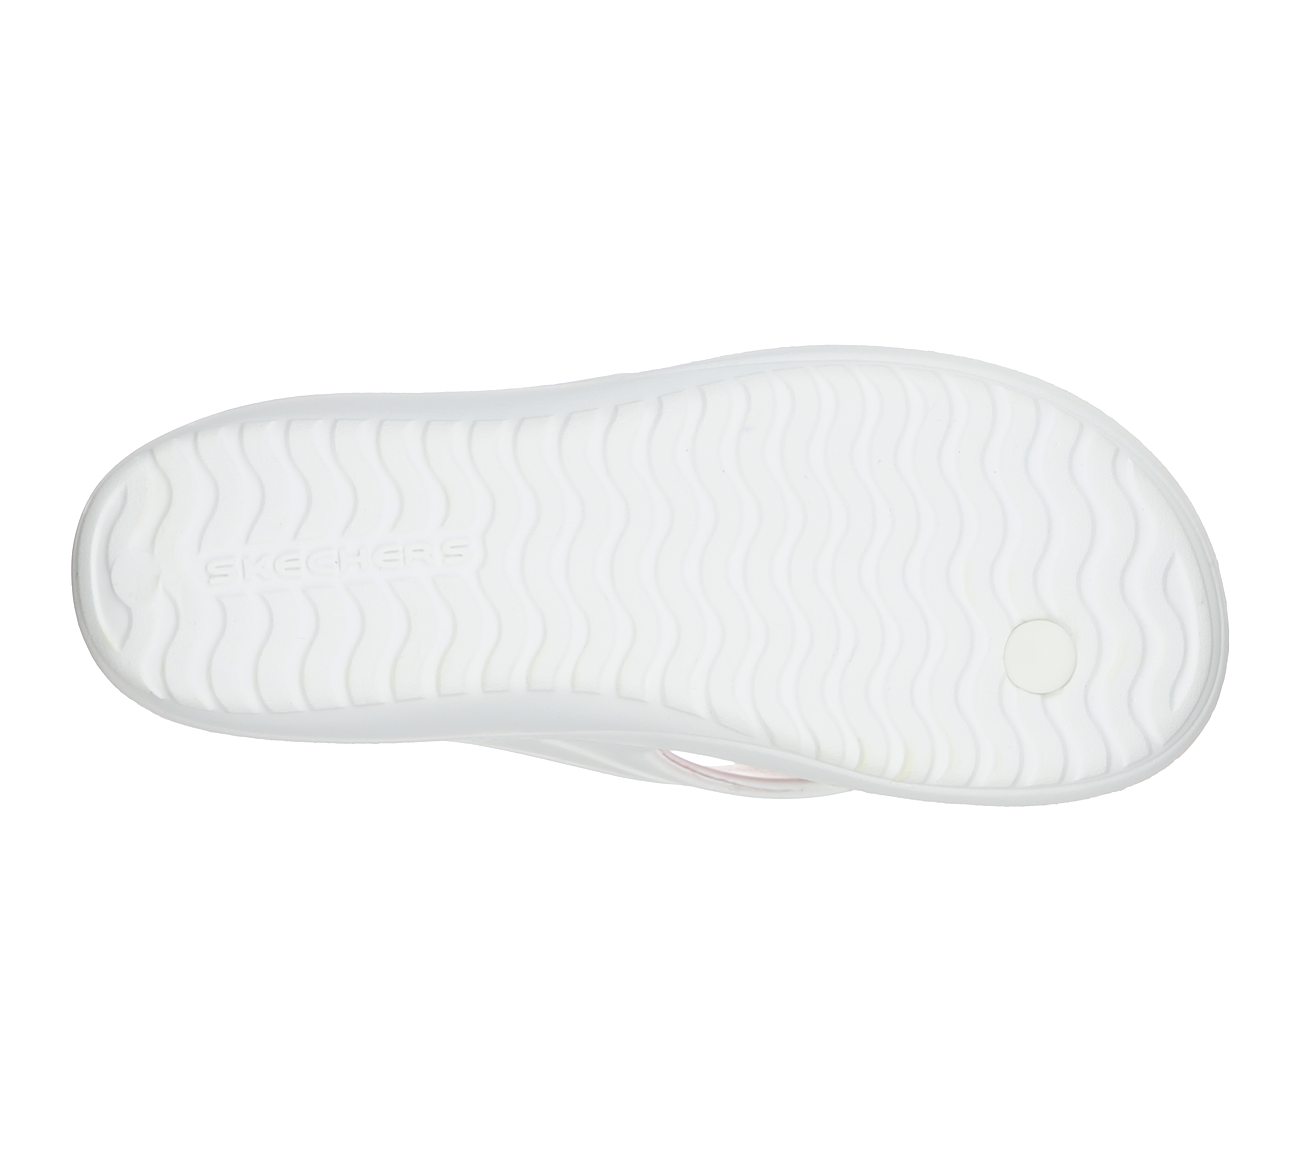 BAY BREEZE - SPONTANEOUS, WHITE/MULTI Footwear Bottom View